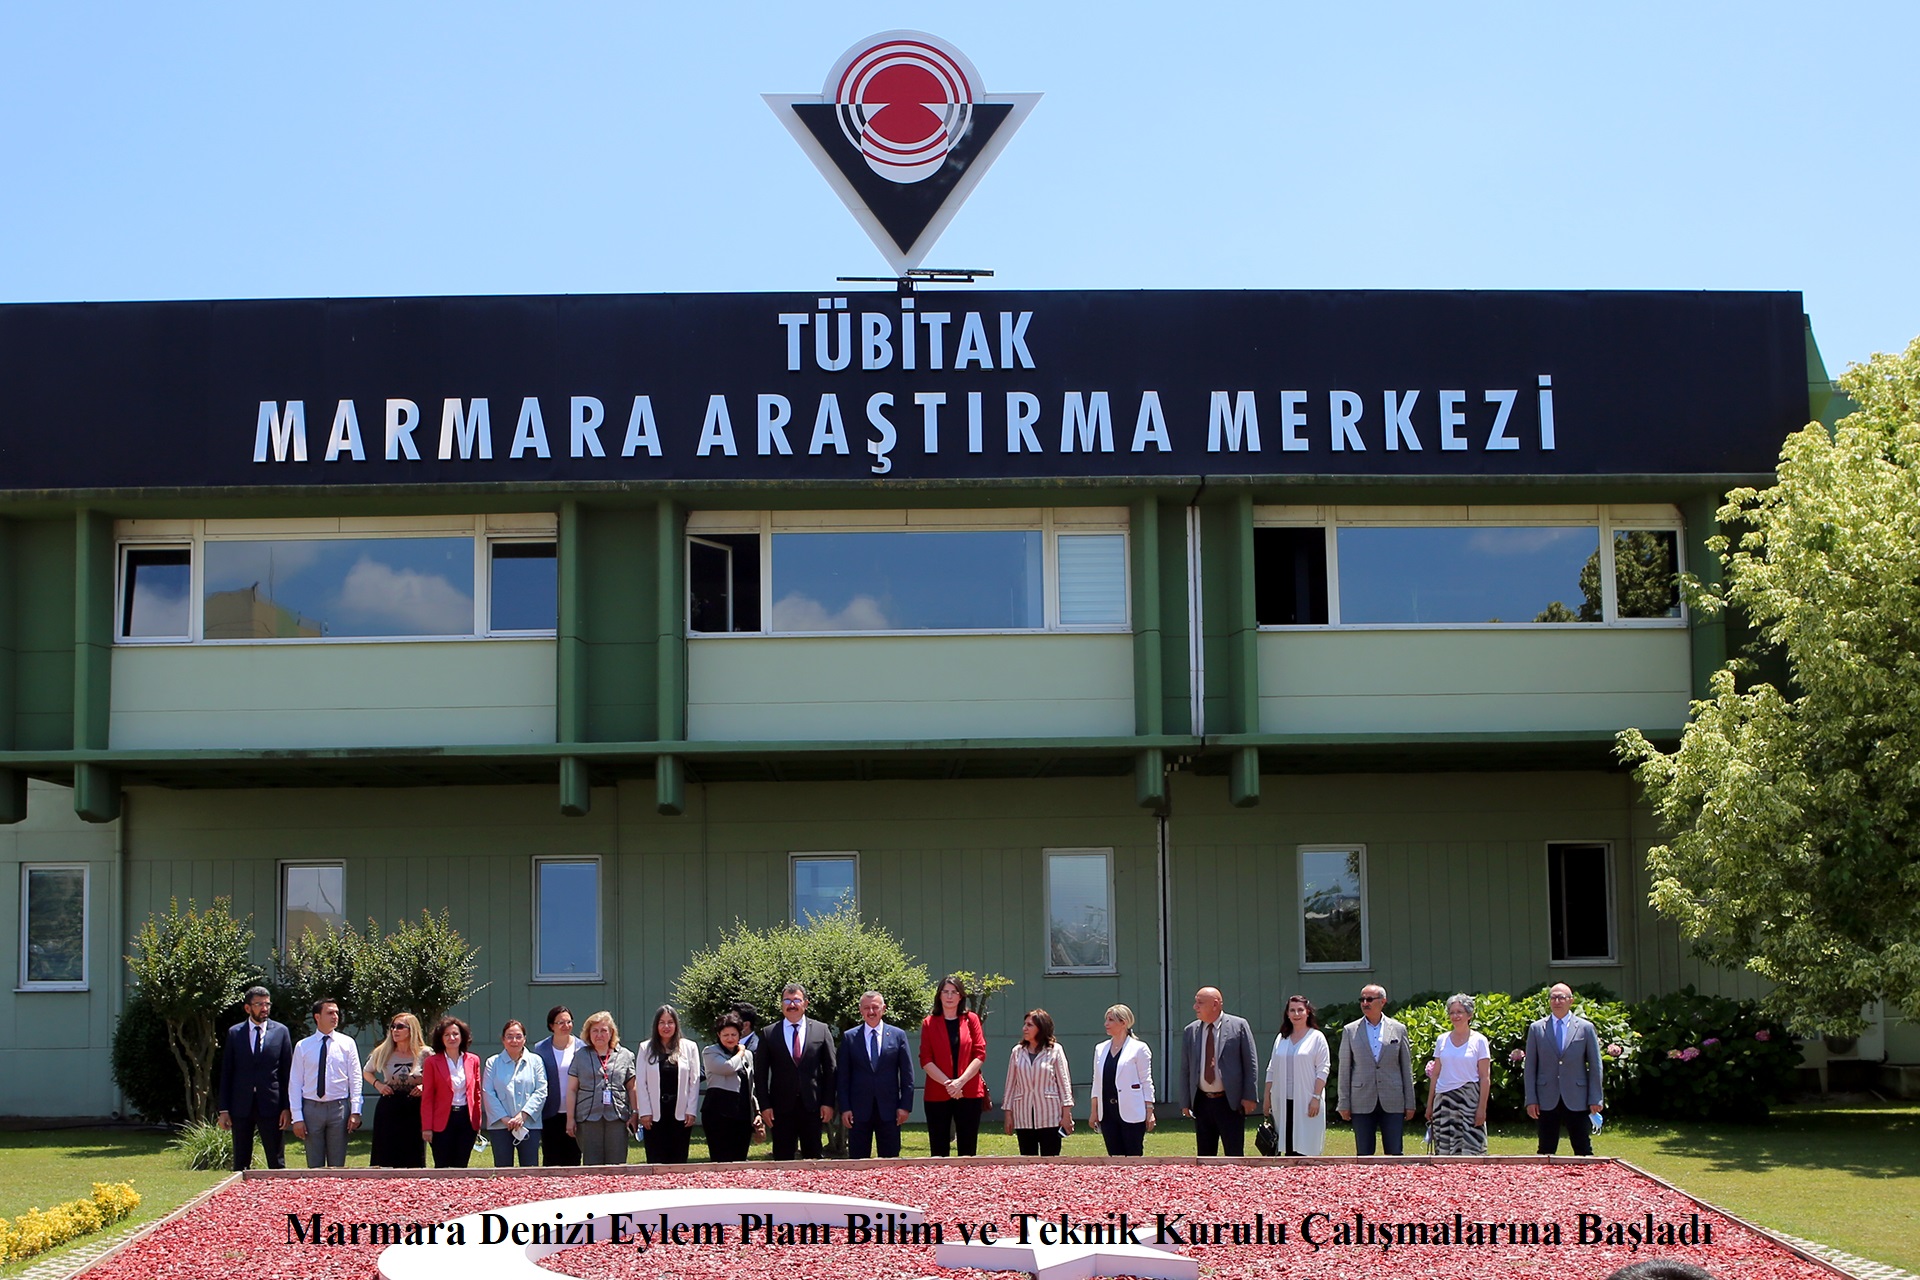 Marmara Denizi Eylem Planı Bilim ve Teknik Kurulu Çalışmalarına Başladı